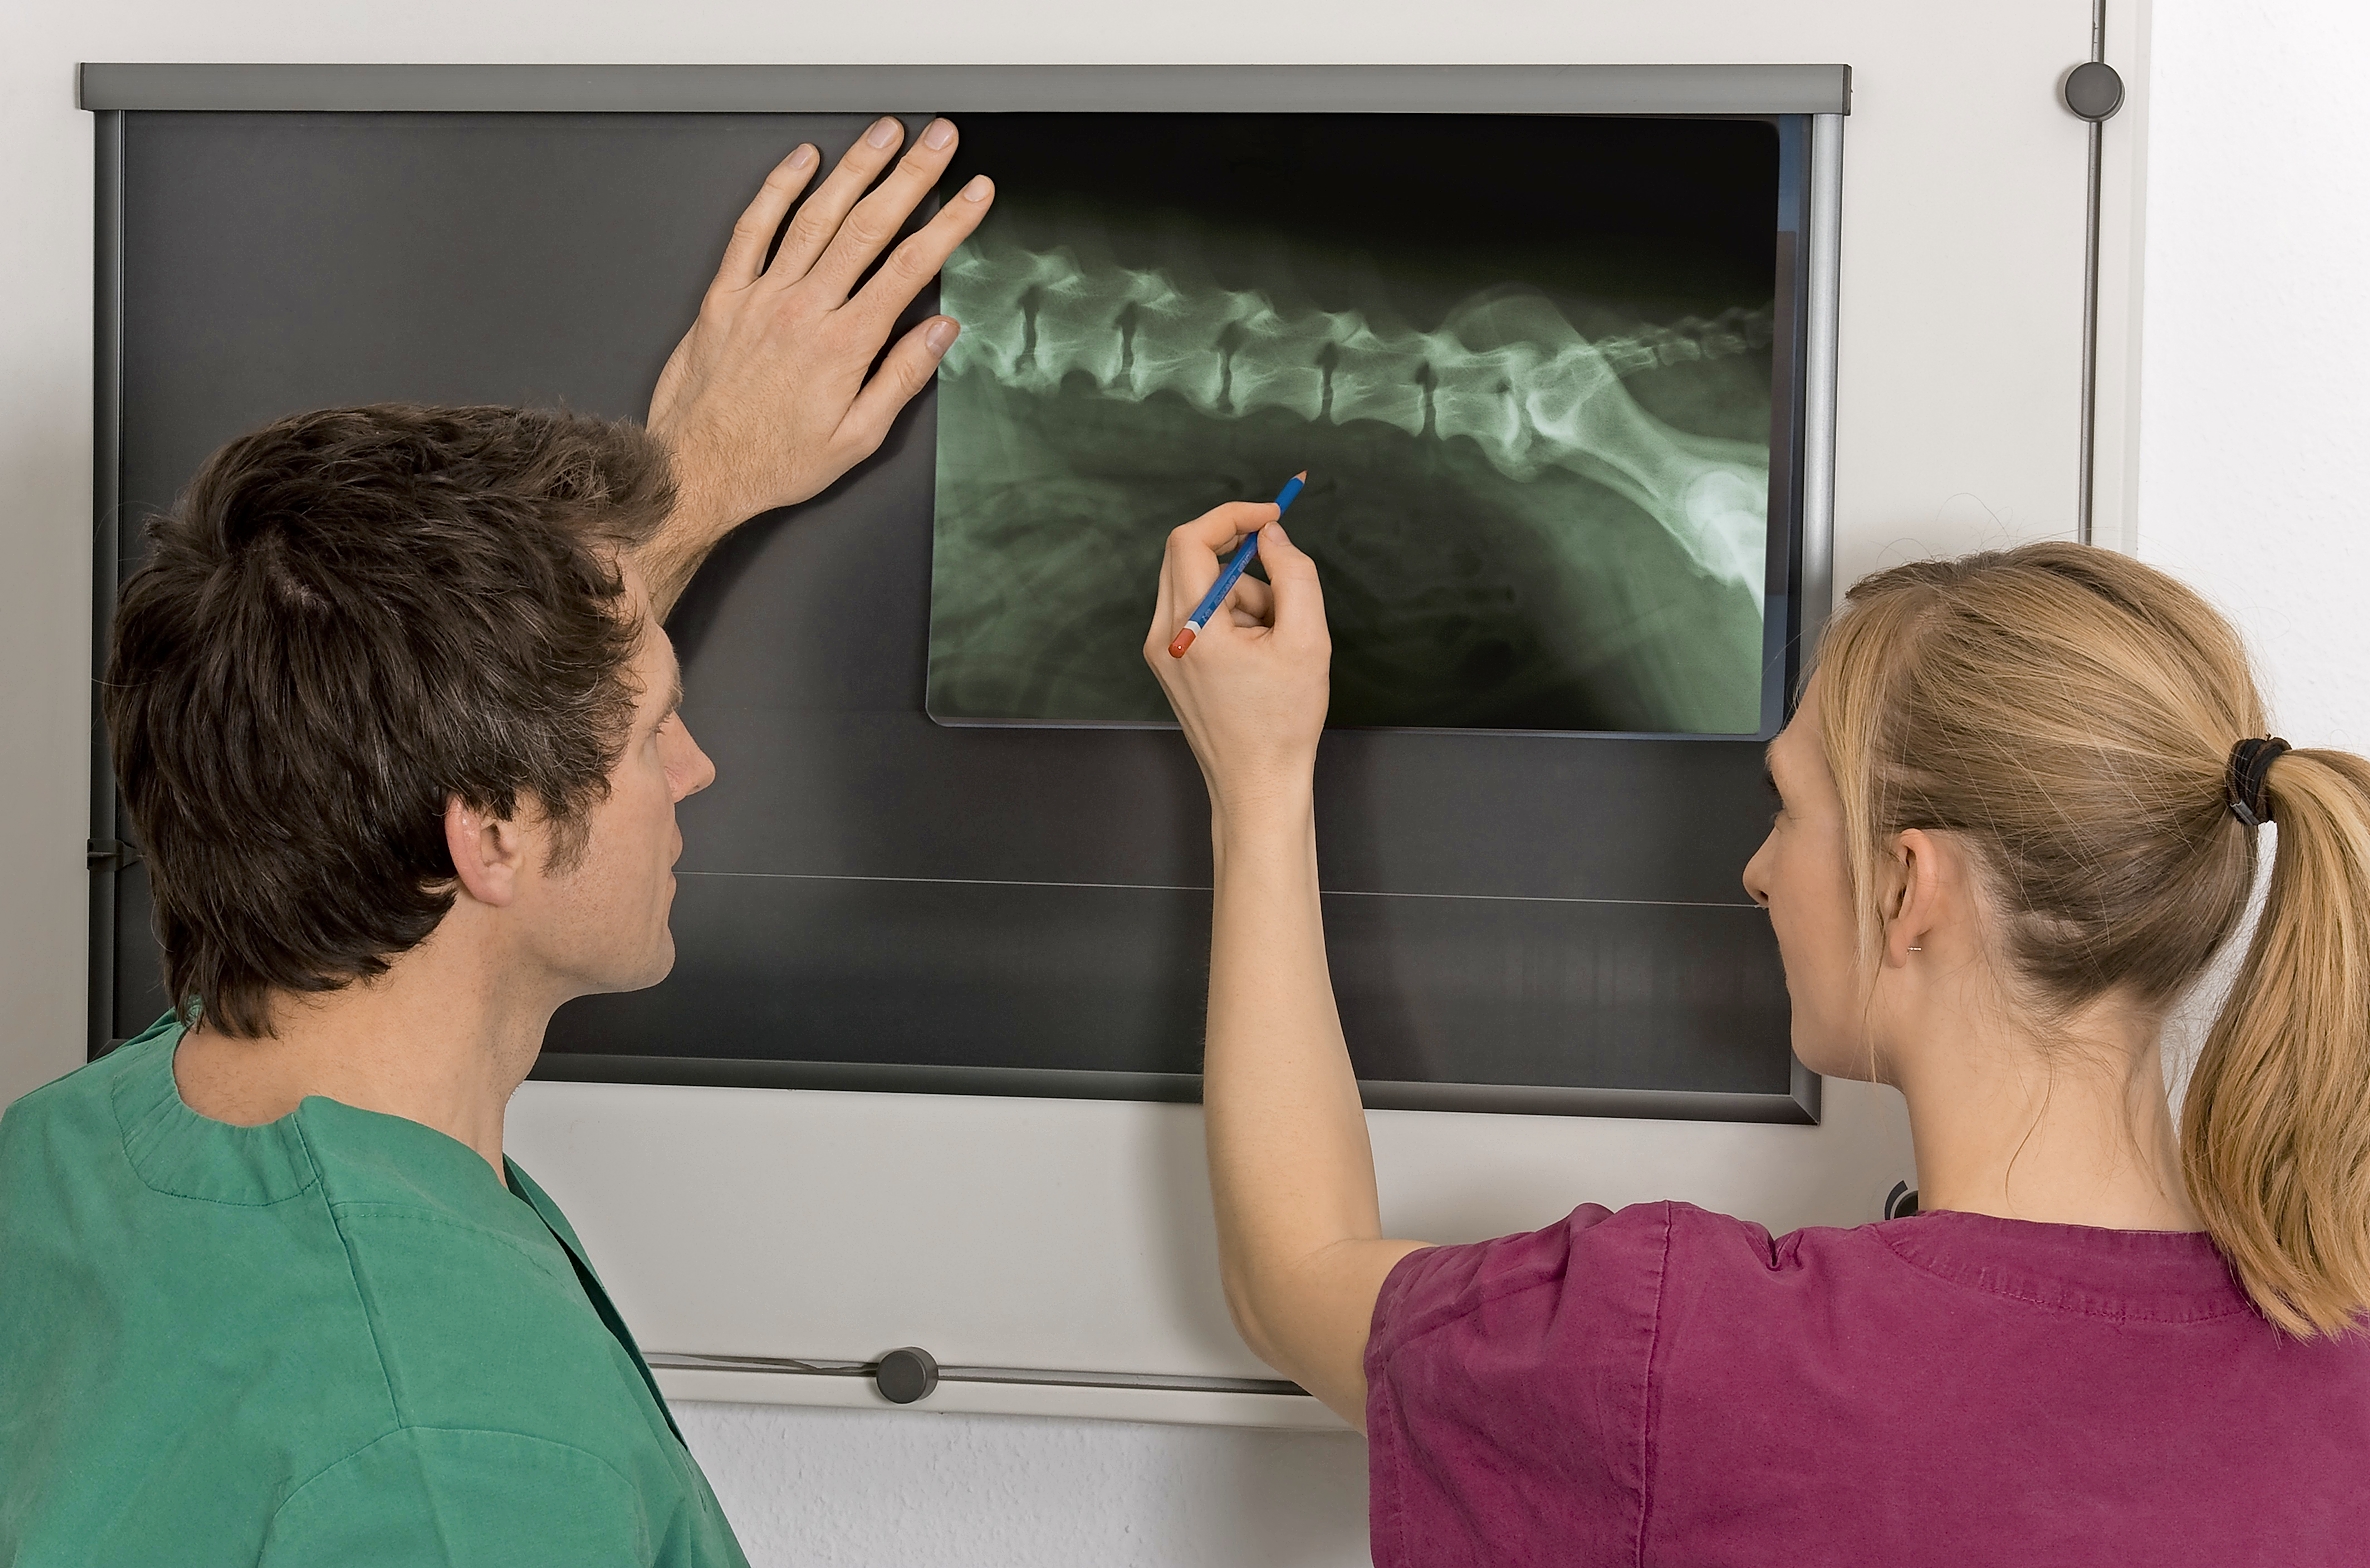 Röntgenaufnahmen sind eine gute Möglichkeit, eine Übersicht über das Abdomen zu erhalten, und können Hinweise auf Probleme im Harntrakt geben.